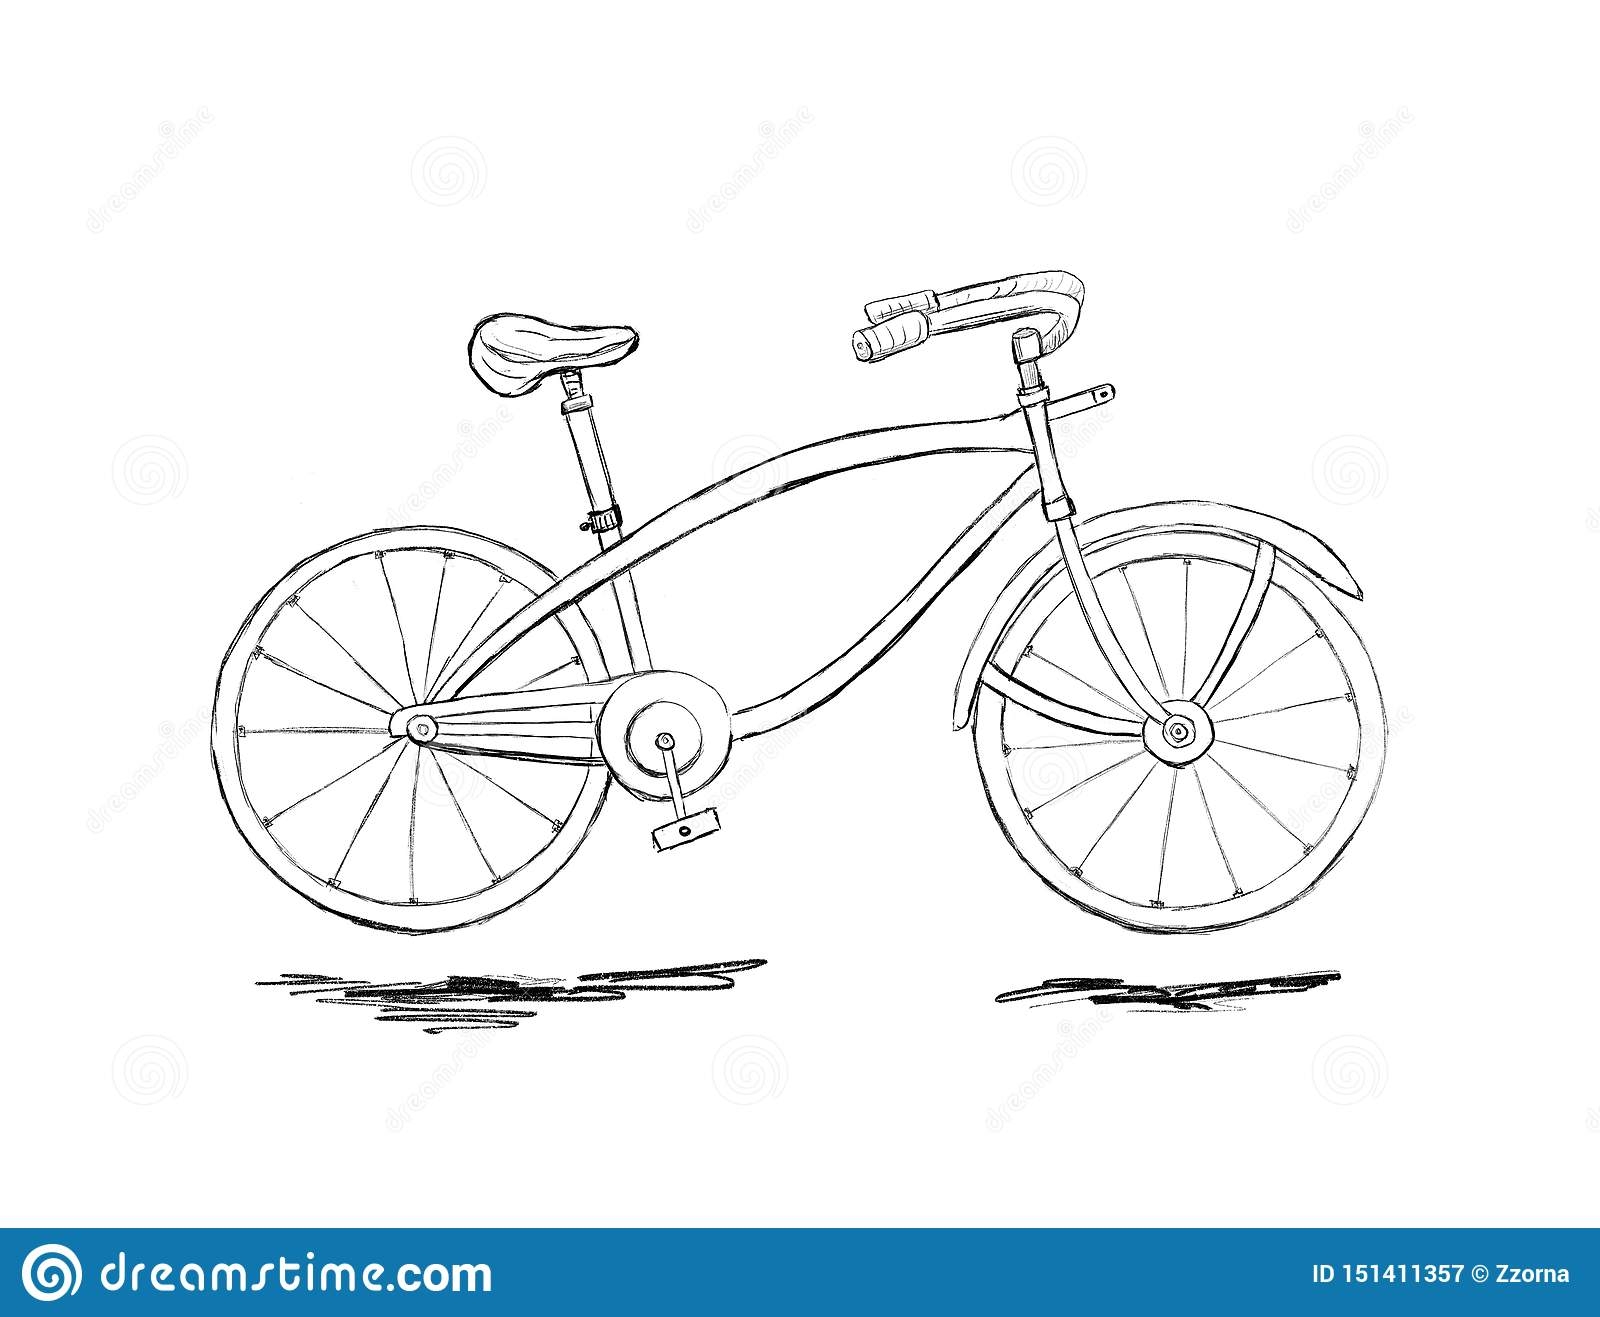 Городской велосипед рисунок карандашом